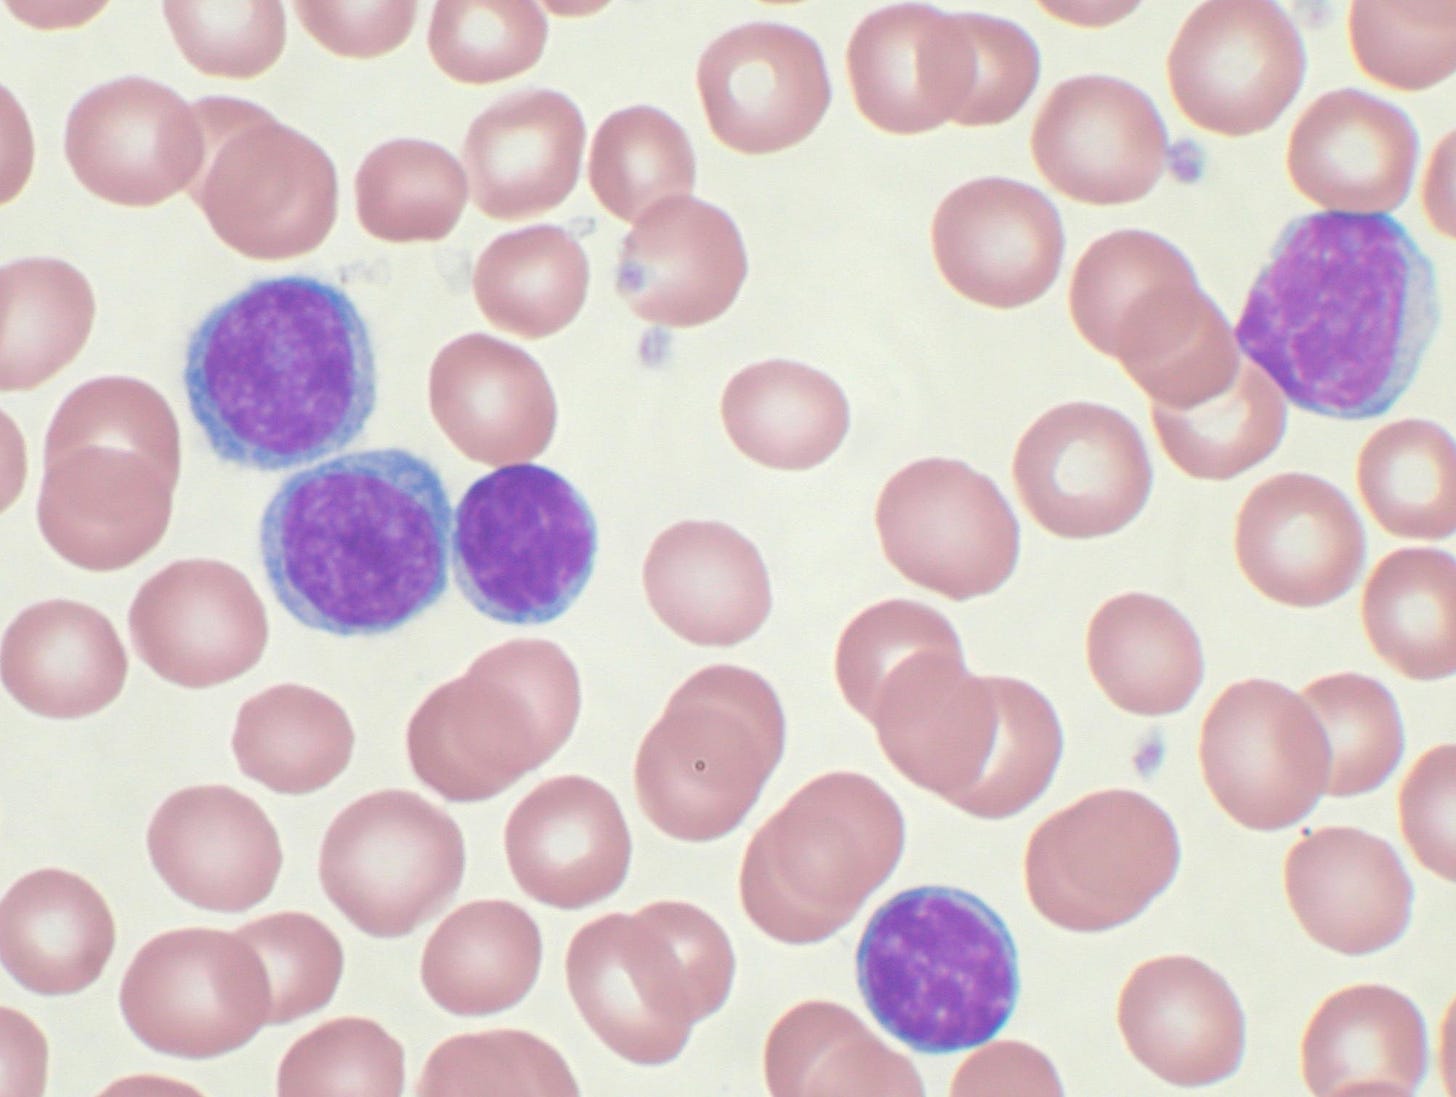 Chronic lymphocytic leukemia - Wikipedia